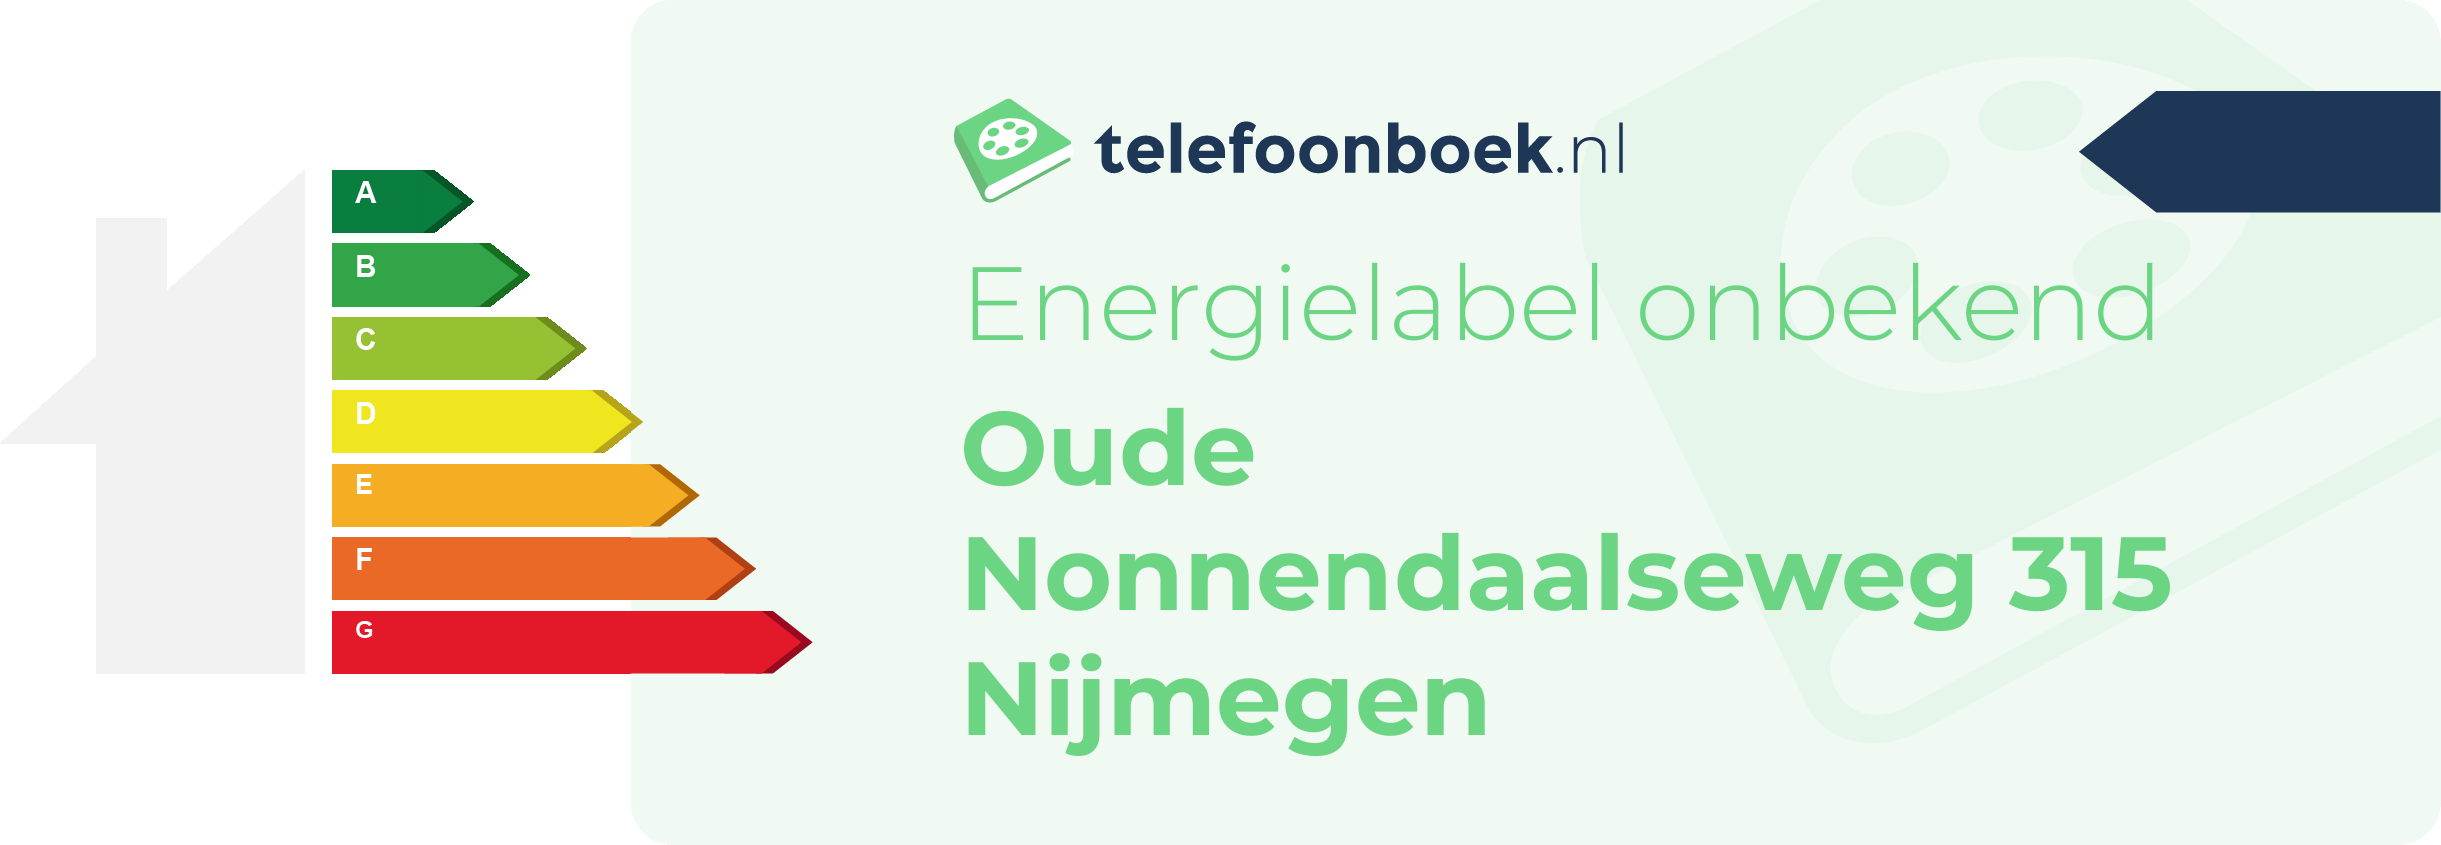 Energielabel Oude Nonnendaalseweg 315 Nijmegen